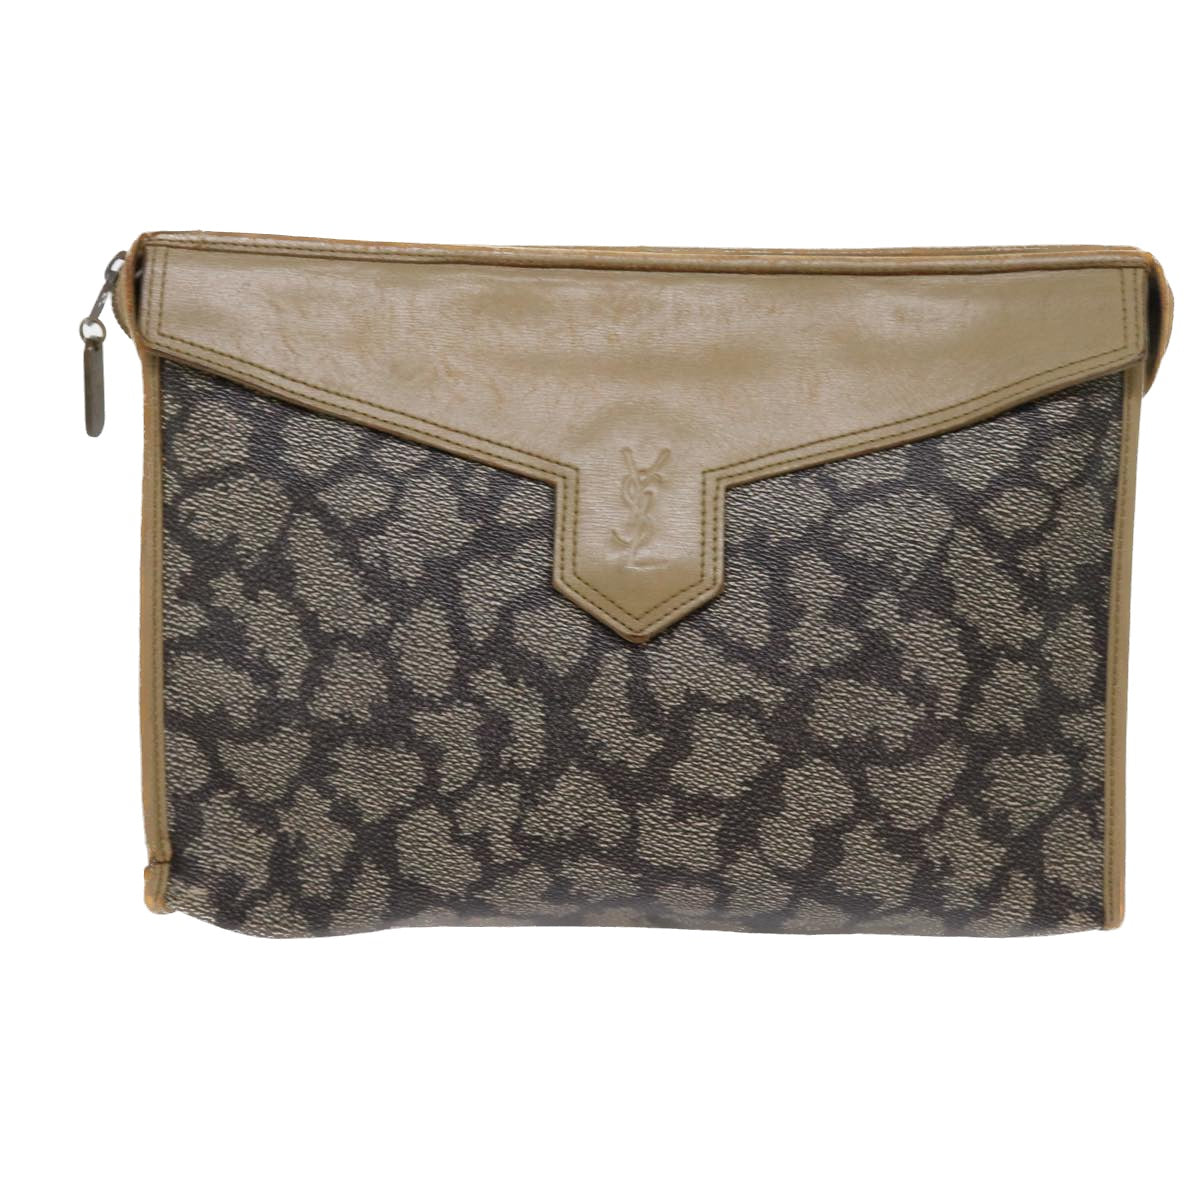 SAINT LAURENT Clutch Bag Wallet Leather 5Set Beige Pink Auth bs8757 - 0